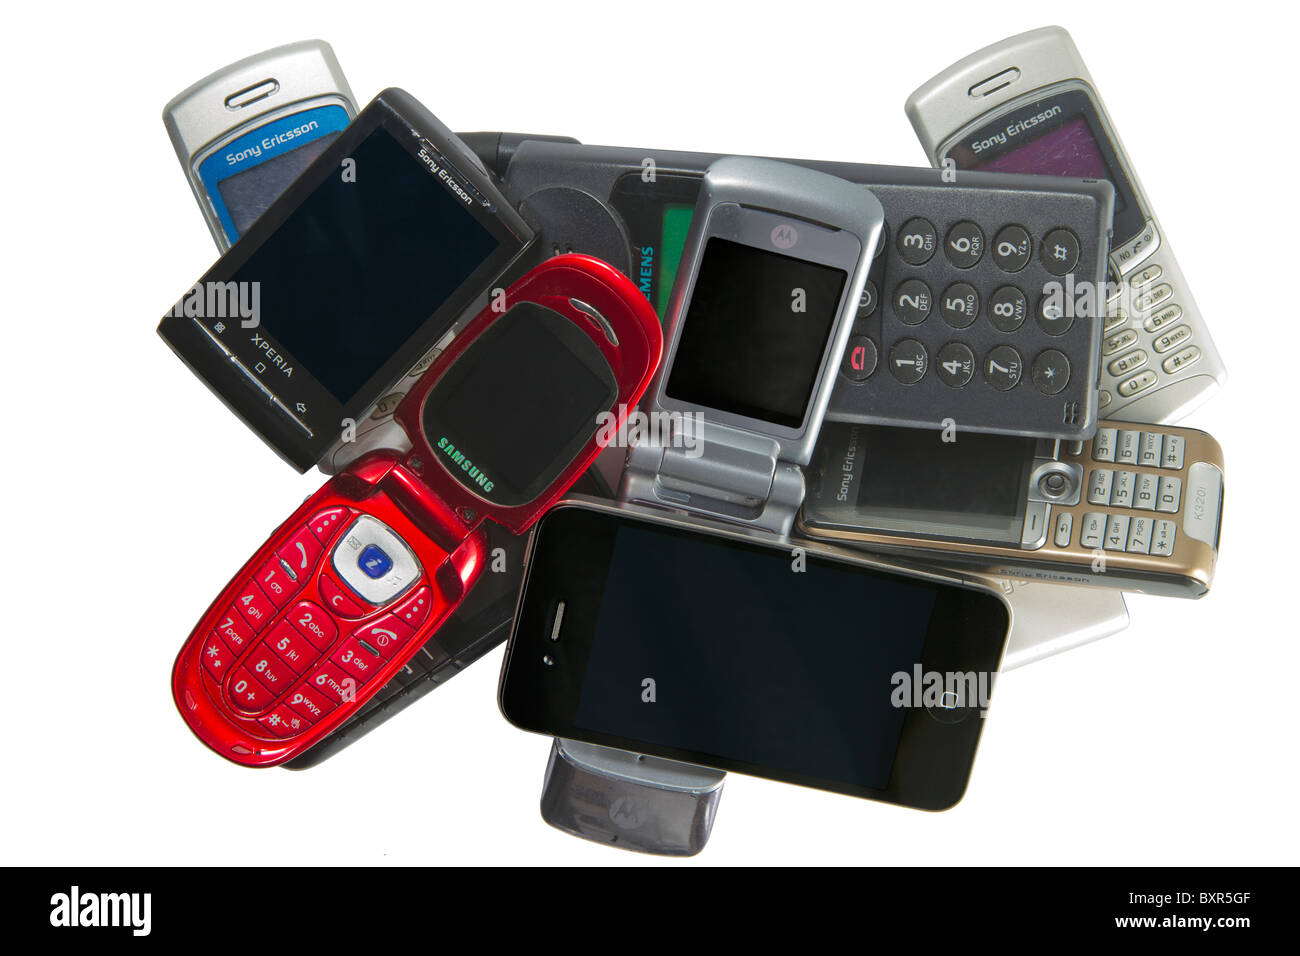 Pila di vecchi e nuovi telefoni cellulari, tra cui Apple iPhone 4 e Android telefono cellulare Sony Ericsson Xperia X10 mini. Foto Stock